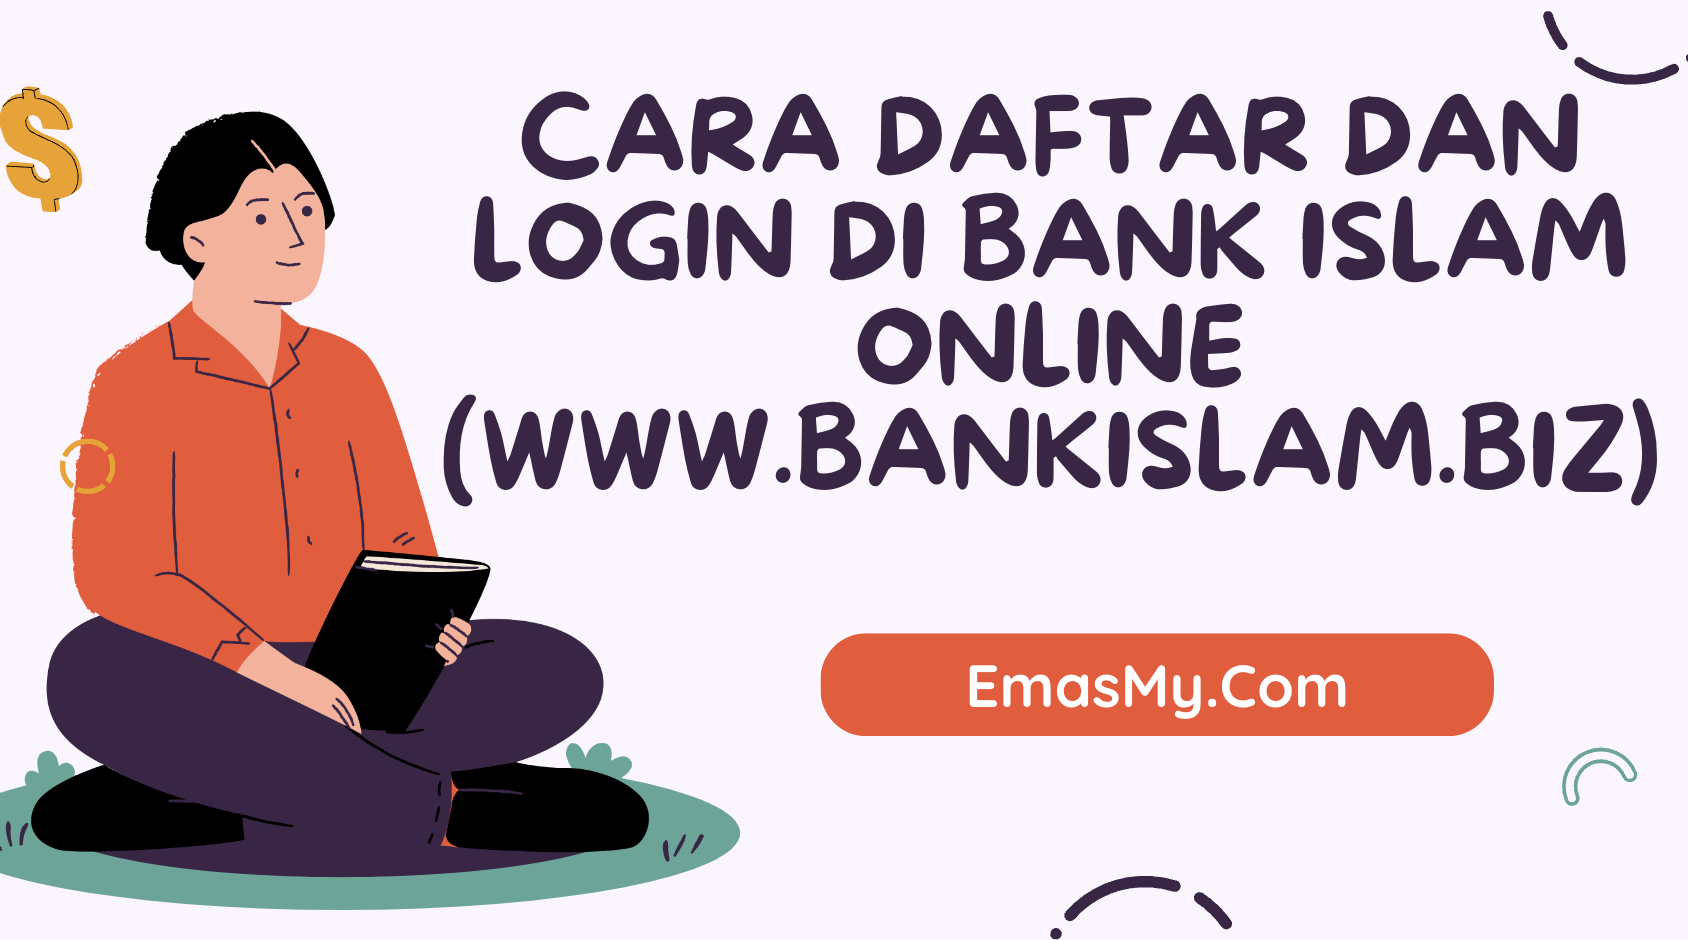 Cara Daftar dan Login di Bank Islam Online